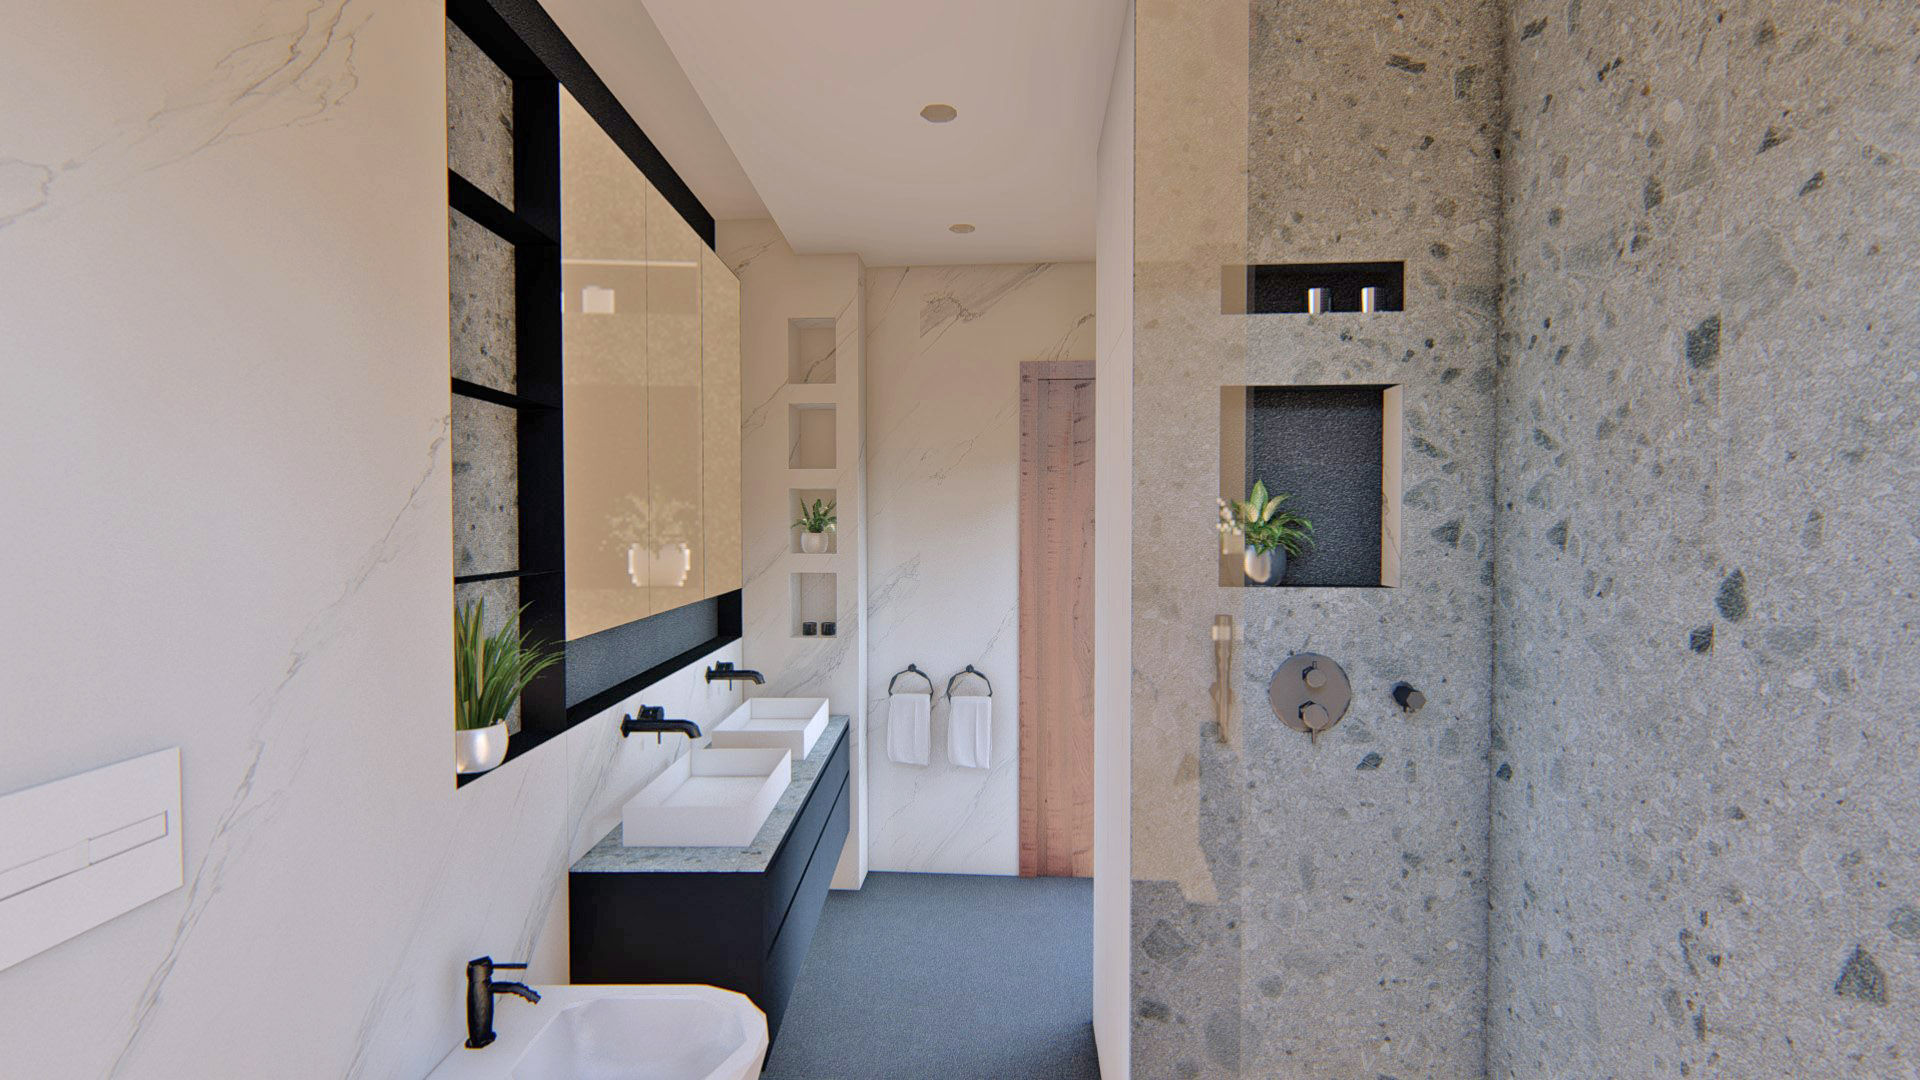 Un baño reformado al completo, Arquitectura Sostenible e Interiorismo | a-nat Arquitectura Sostenible e Interiorismo | a-nat Minimalist style bathroom